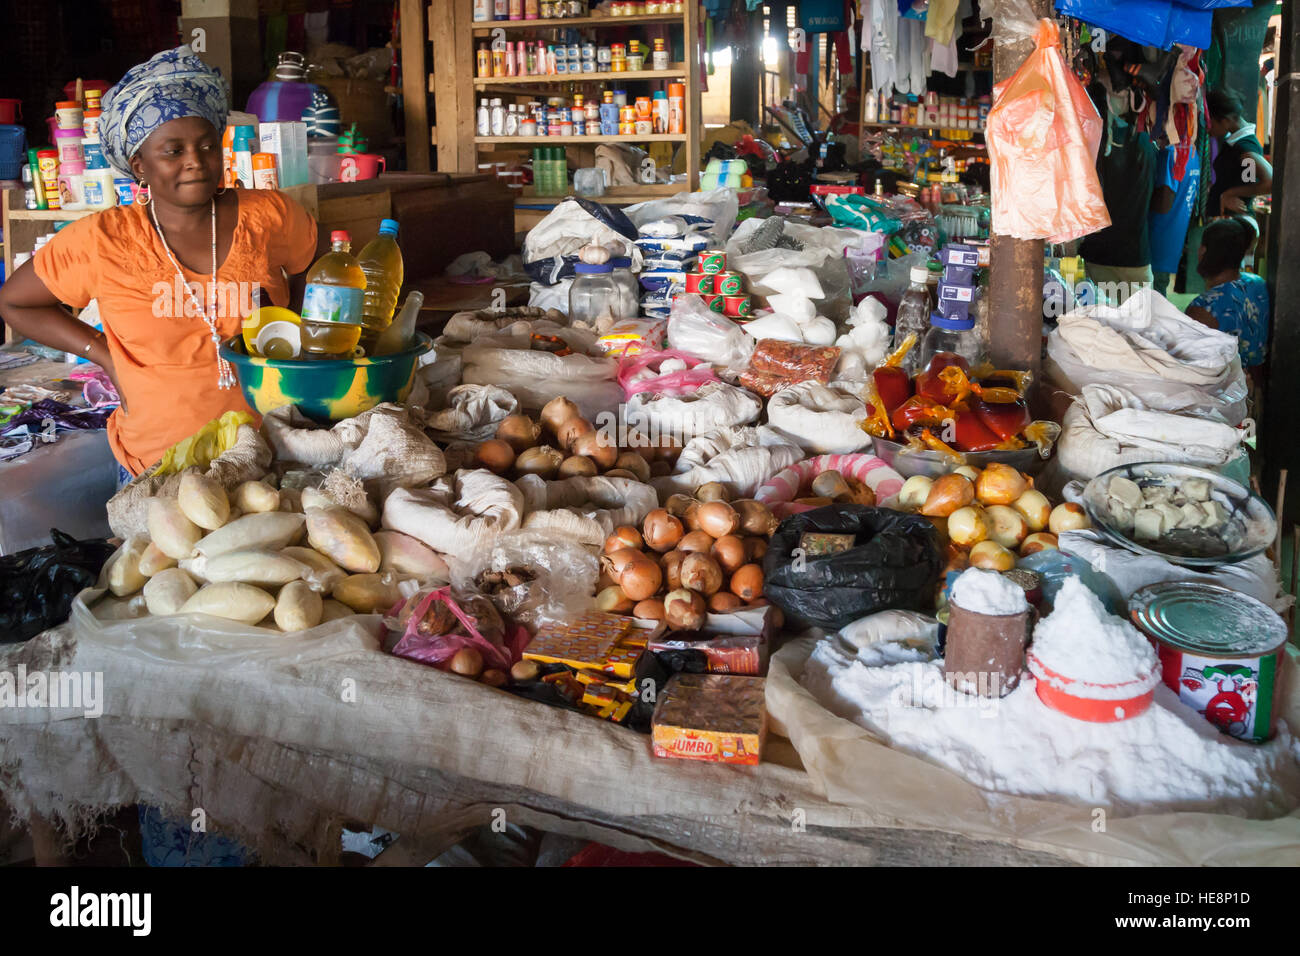 Gewürze und andere Lebensmittel auf dem Markt in Kabala, Sierra Leone. Wie alle Lebensmittel werden Gewürze in Sierra Leone in kleinen Portionen verkauft. Inländische Lagerbestände sind nicht üblich Stockfoto